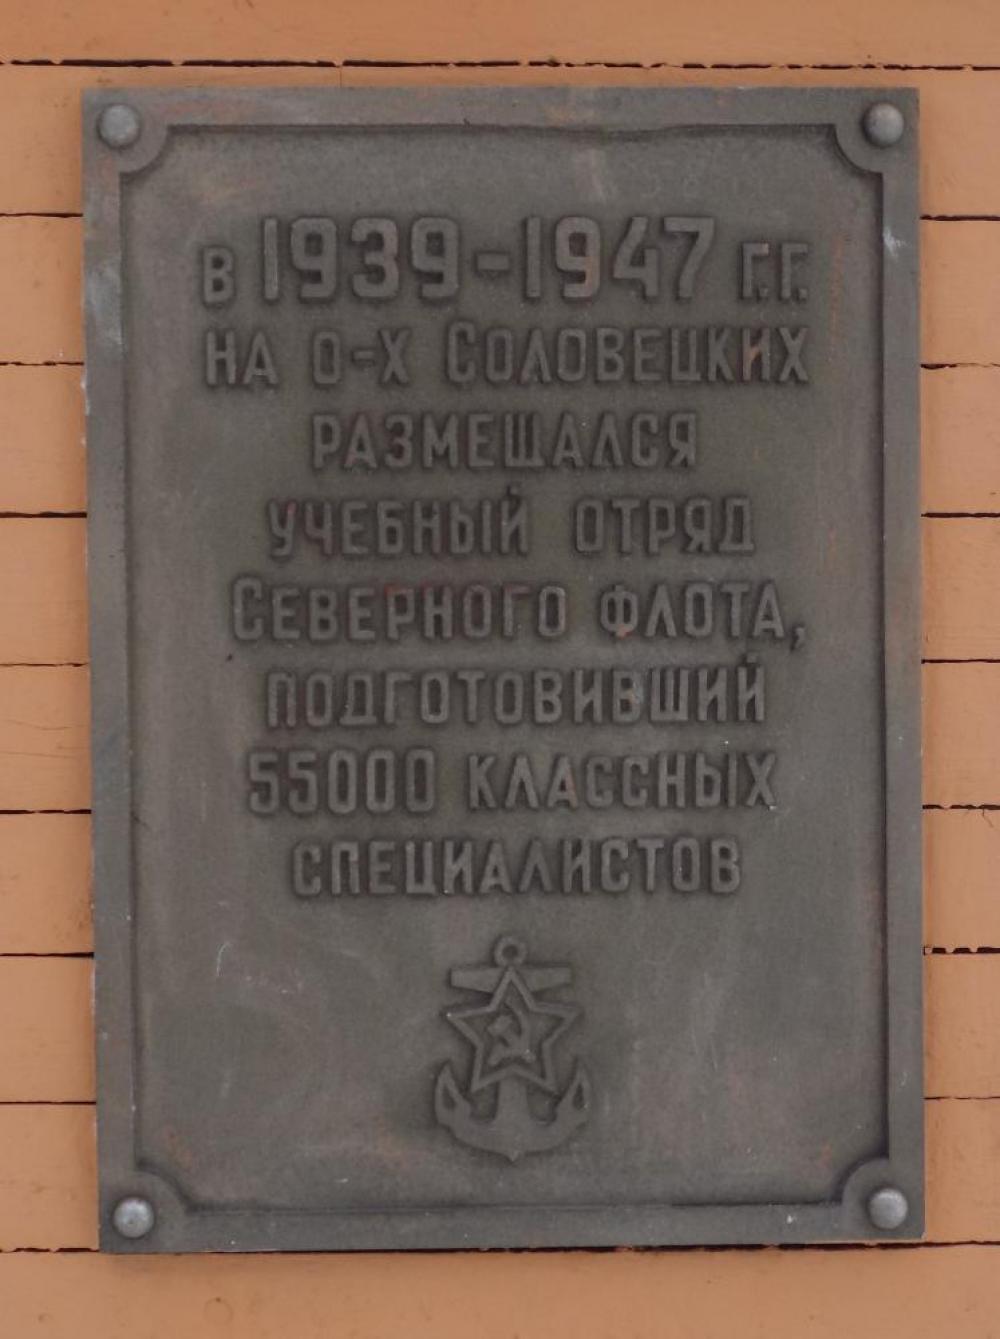 Мемориальная доска на здании Петербургской гостиницы, установленная  участниками встречи в июле 1990 г.